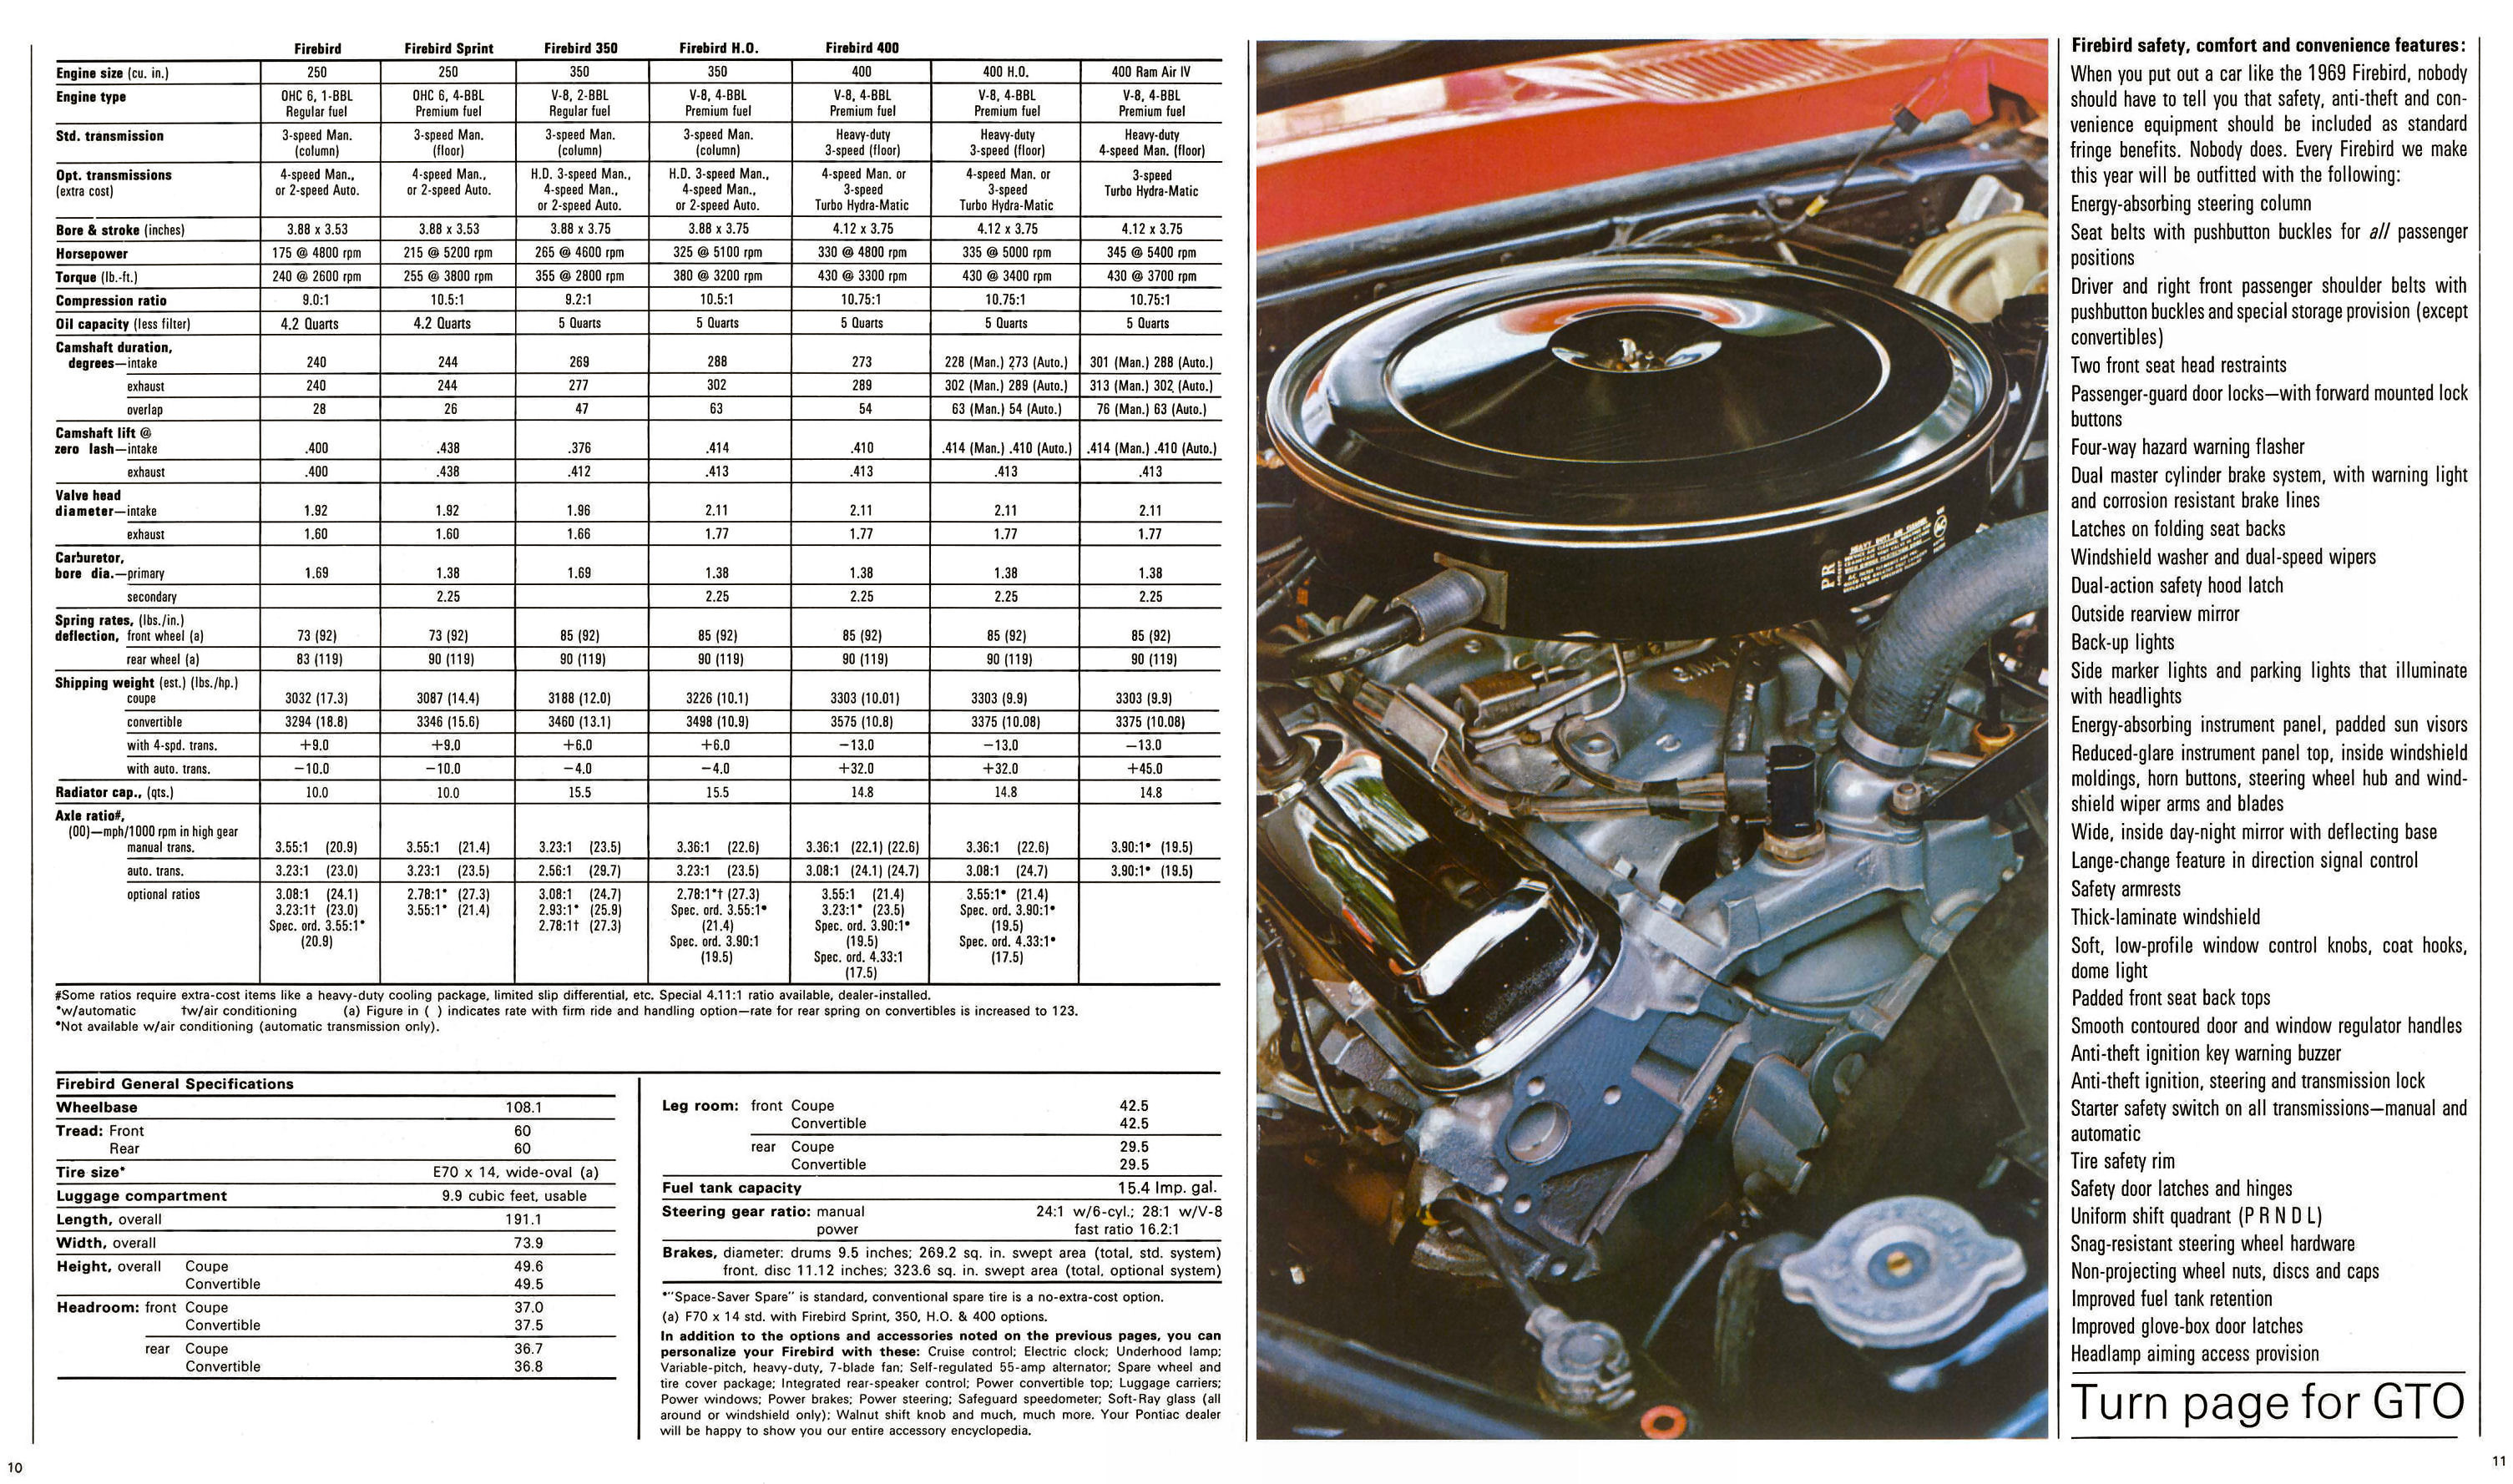 1969_Pontiac_Firebird_and_GTO_Cdn-10-11